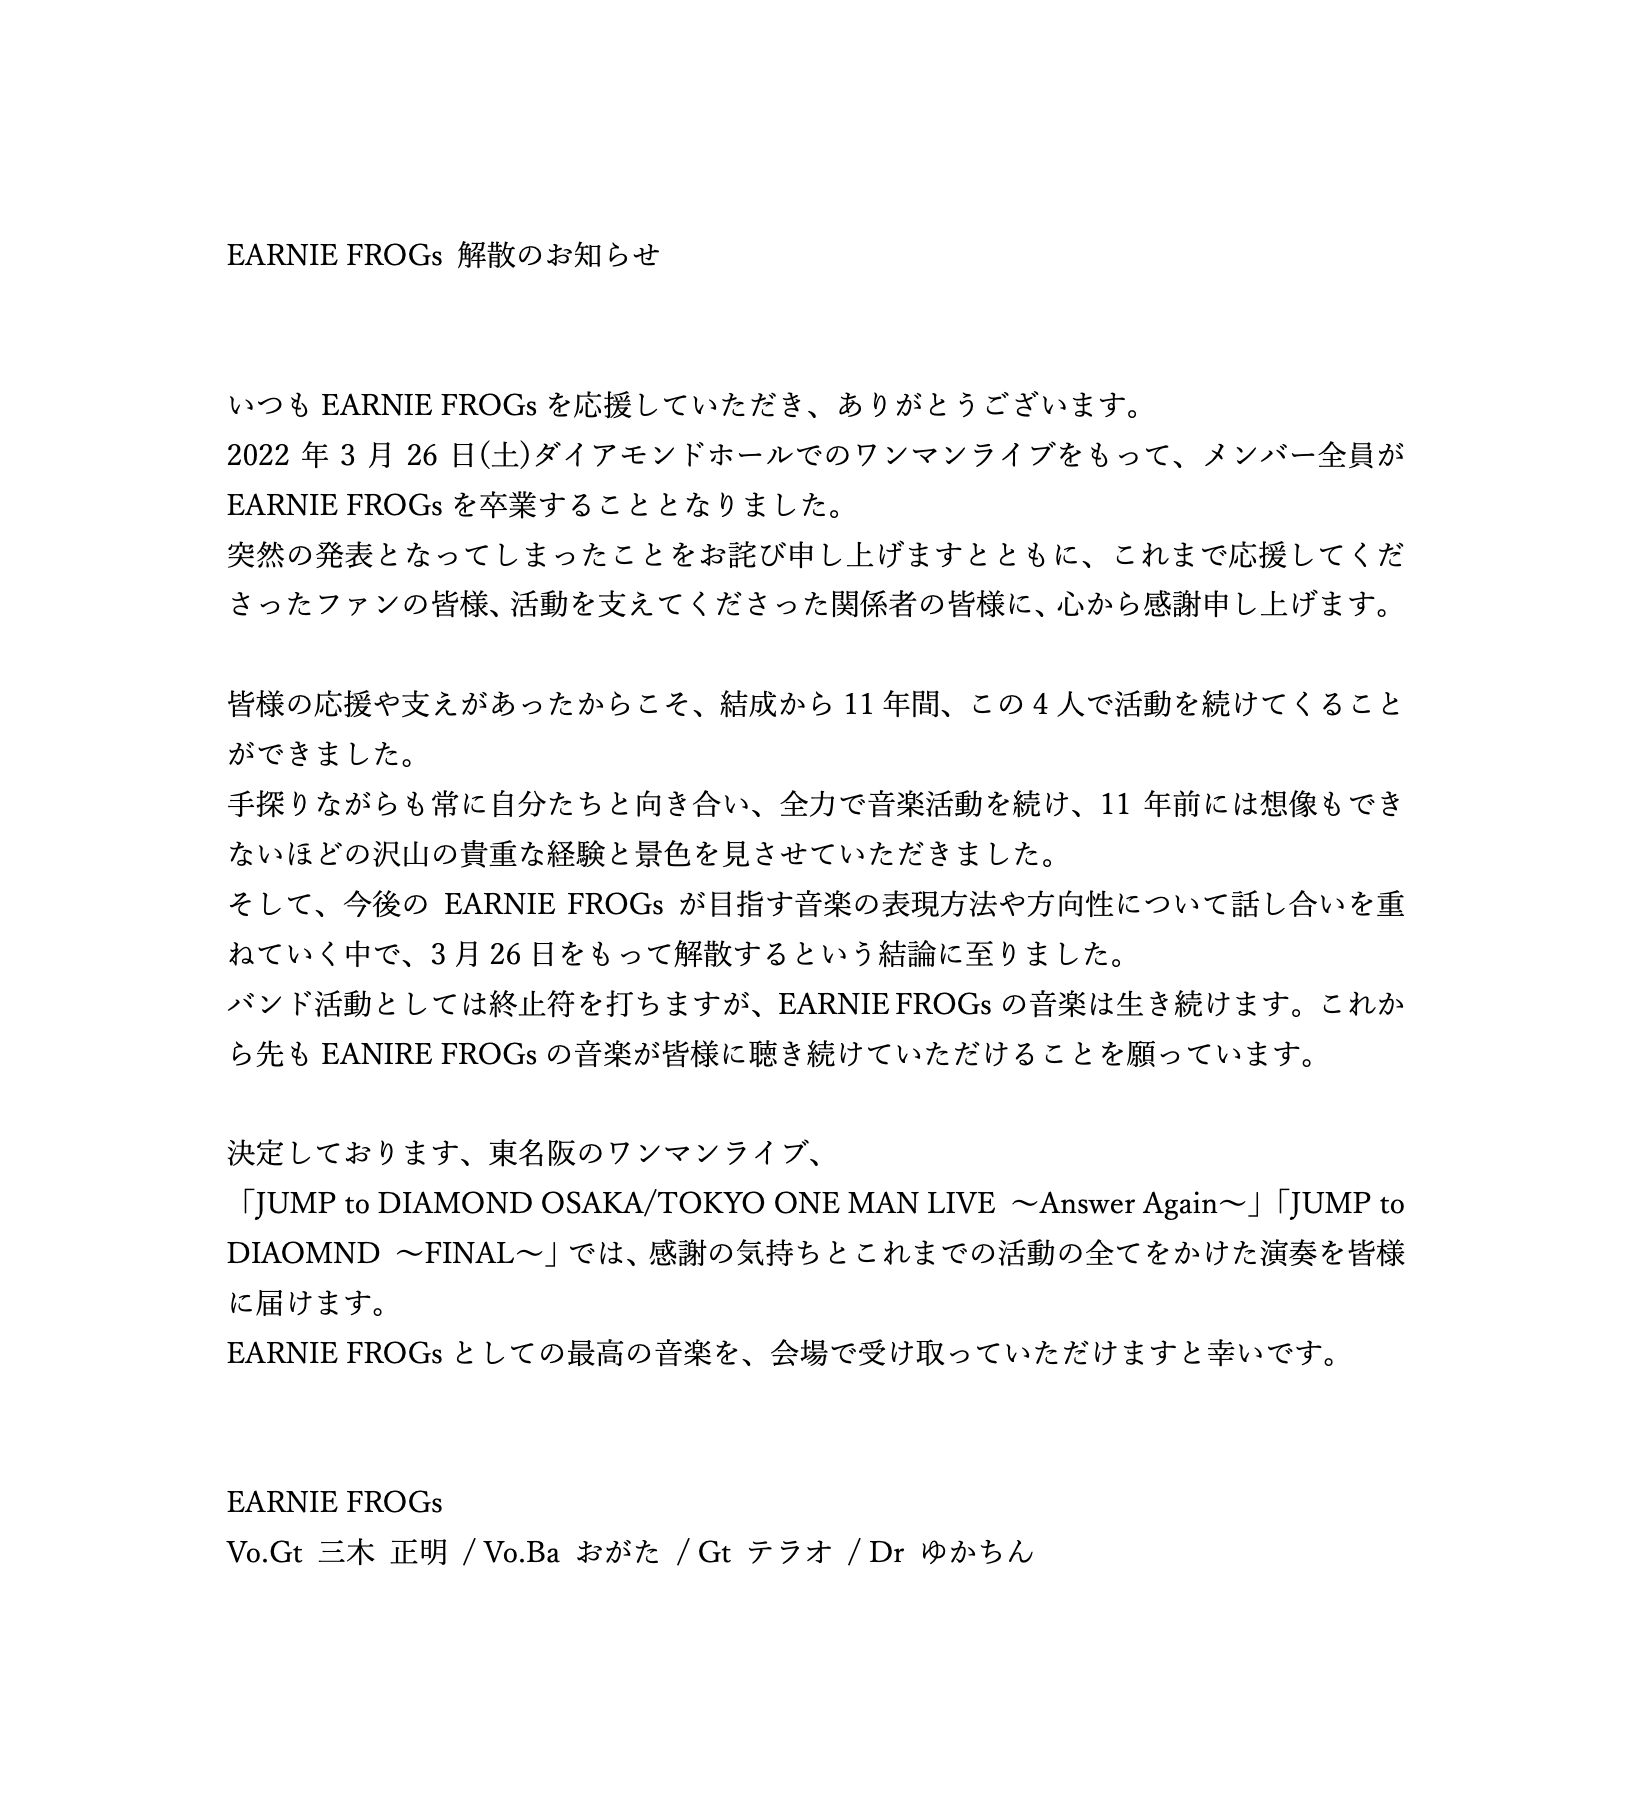 ポタリ DVD  "ポタリの完"